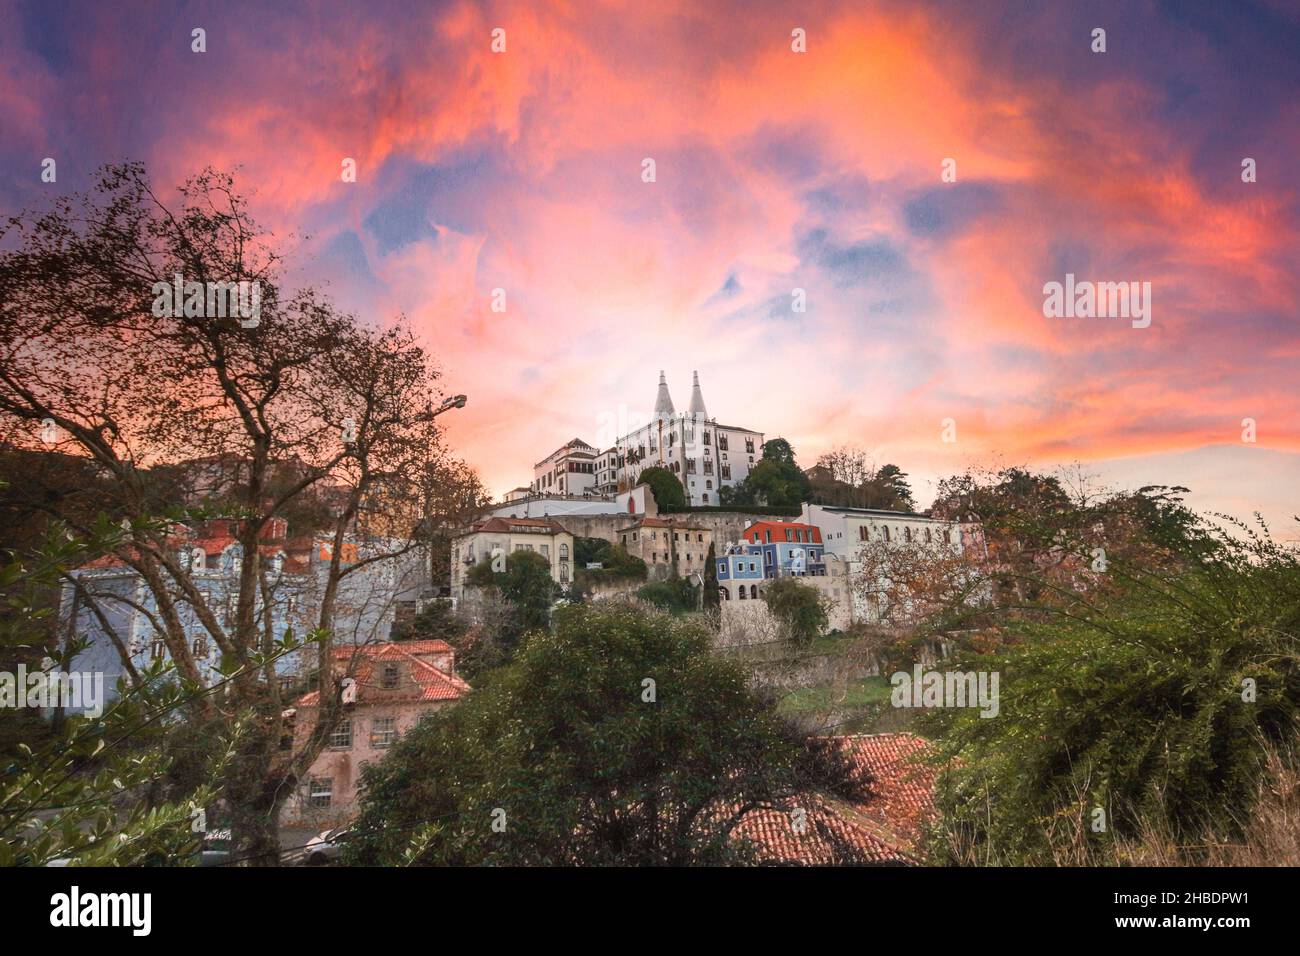 Das portugiesische Dorf Sintra, ein UNESCO-Weltkulturerbe. Sintra National Palace im Hintergrund. Sintra, Portugal. Stockfoto